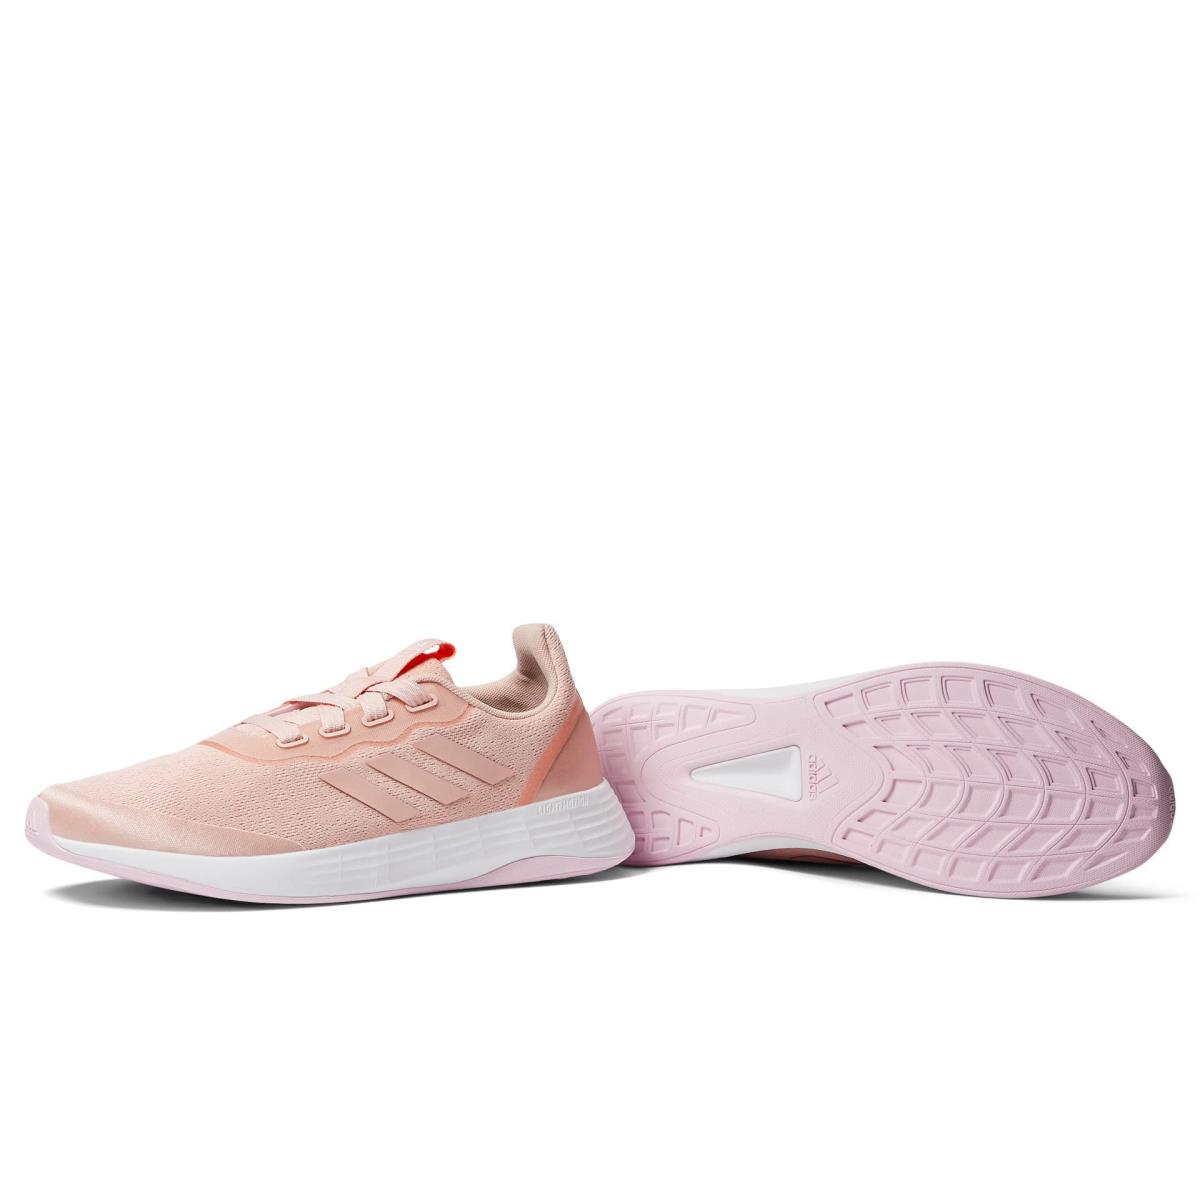 Adidas Women`s Running Shoes Sneaker Vapour Pink/Vapour Pink/Screaming Orange